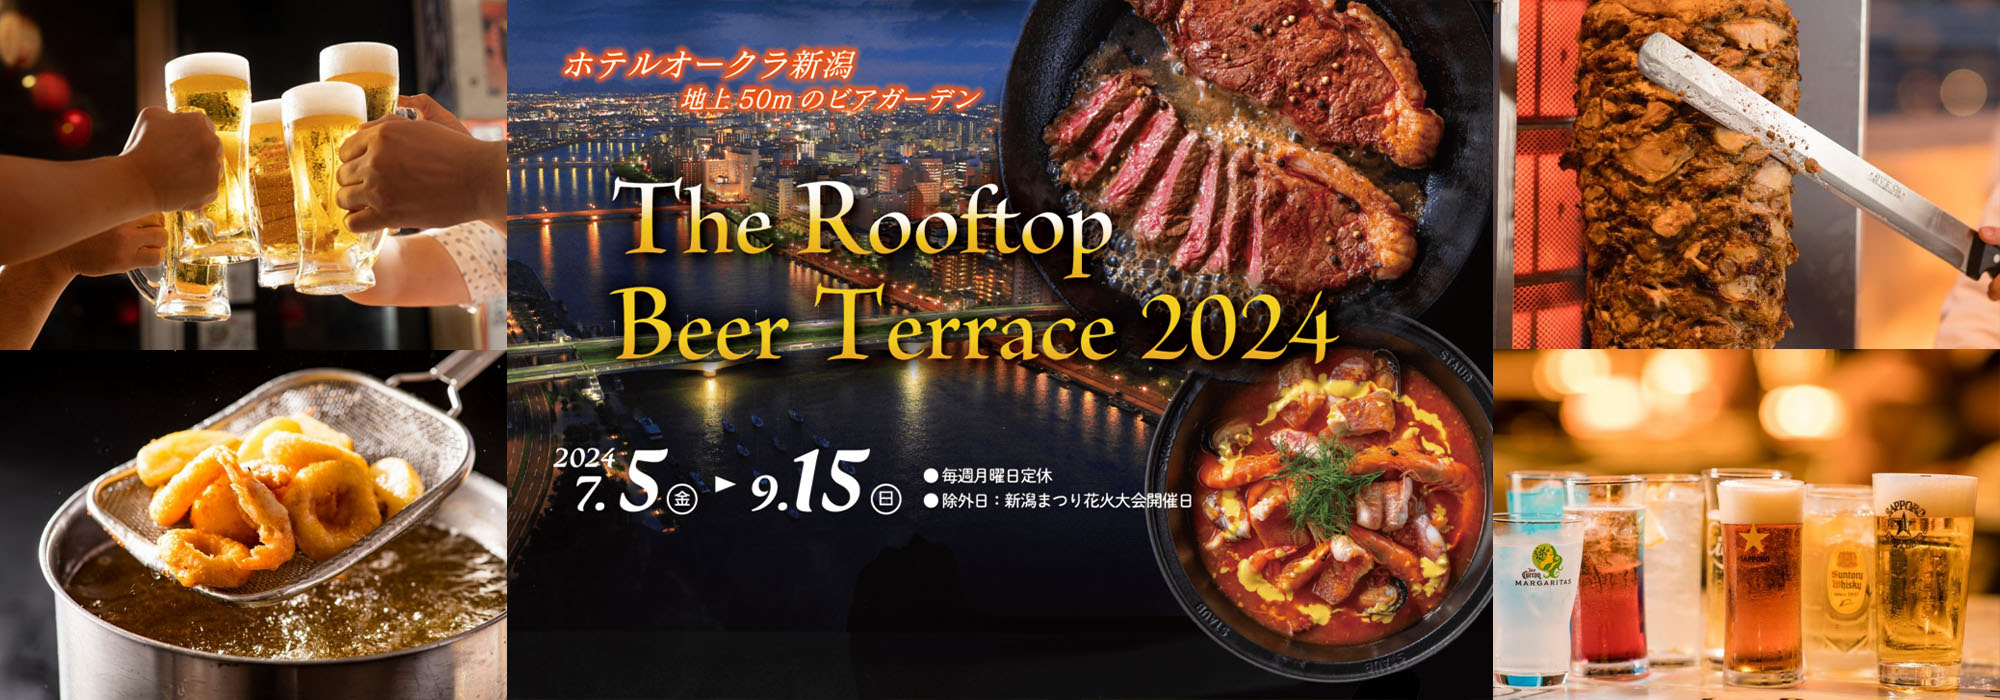 ホテルオークラ新潟 地上50mのビアガーデン「The Rooftop Beer Terrace 2024」